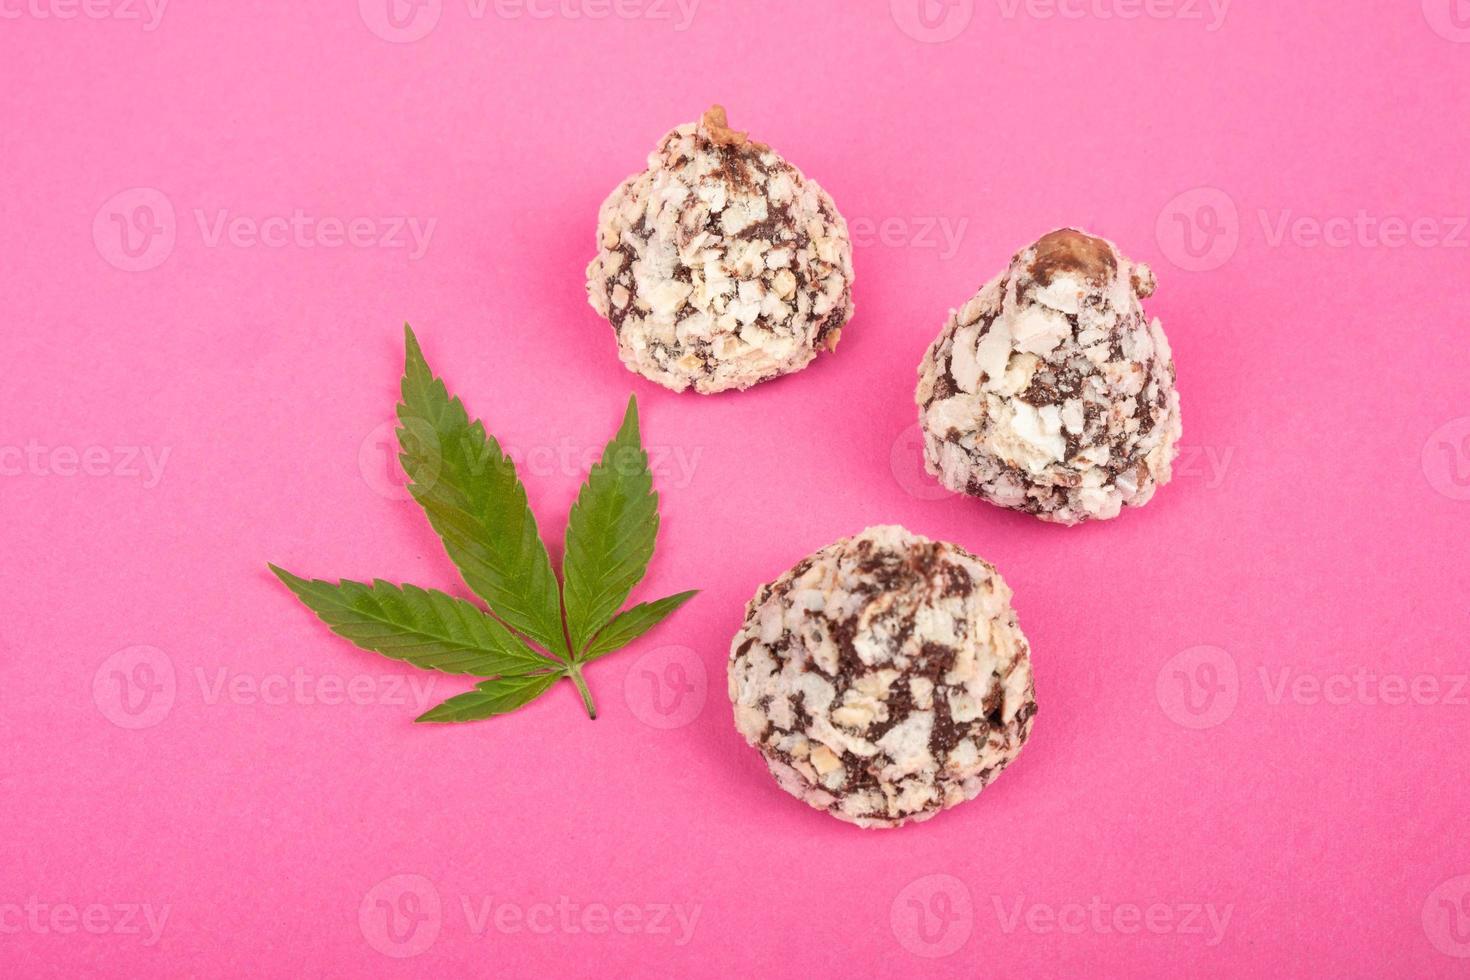 cannabis snoep chocolade truffel snoepjes met noten en groene bladmarihuana op roze achtergrond foto